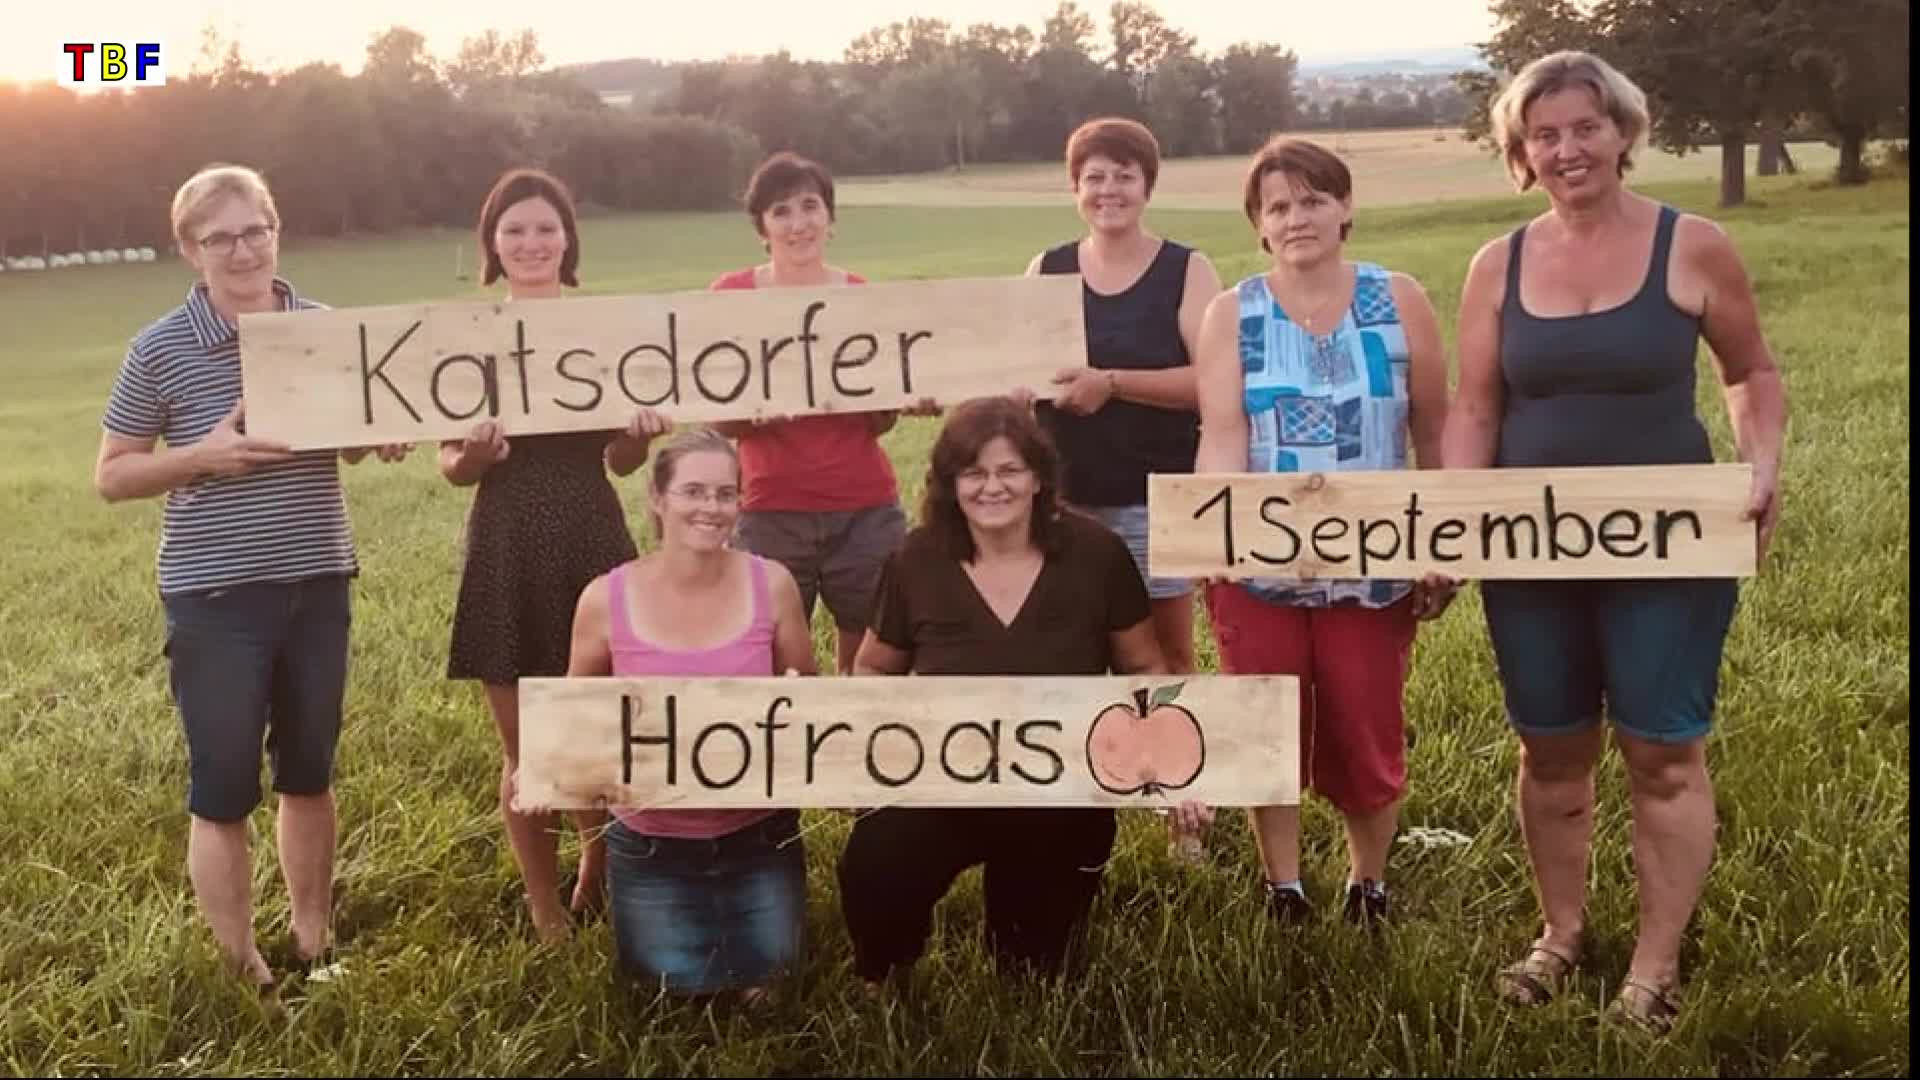 Katsdorfer Hofroas